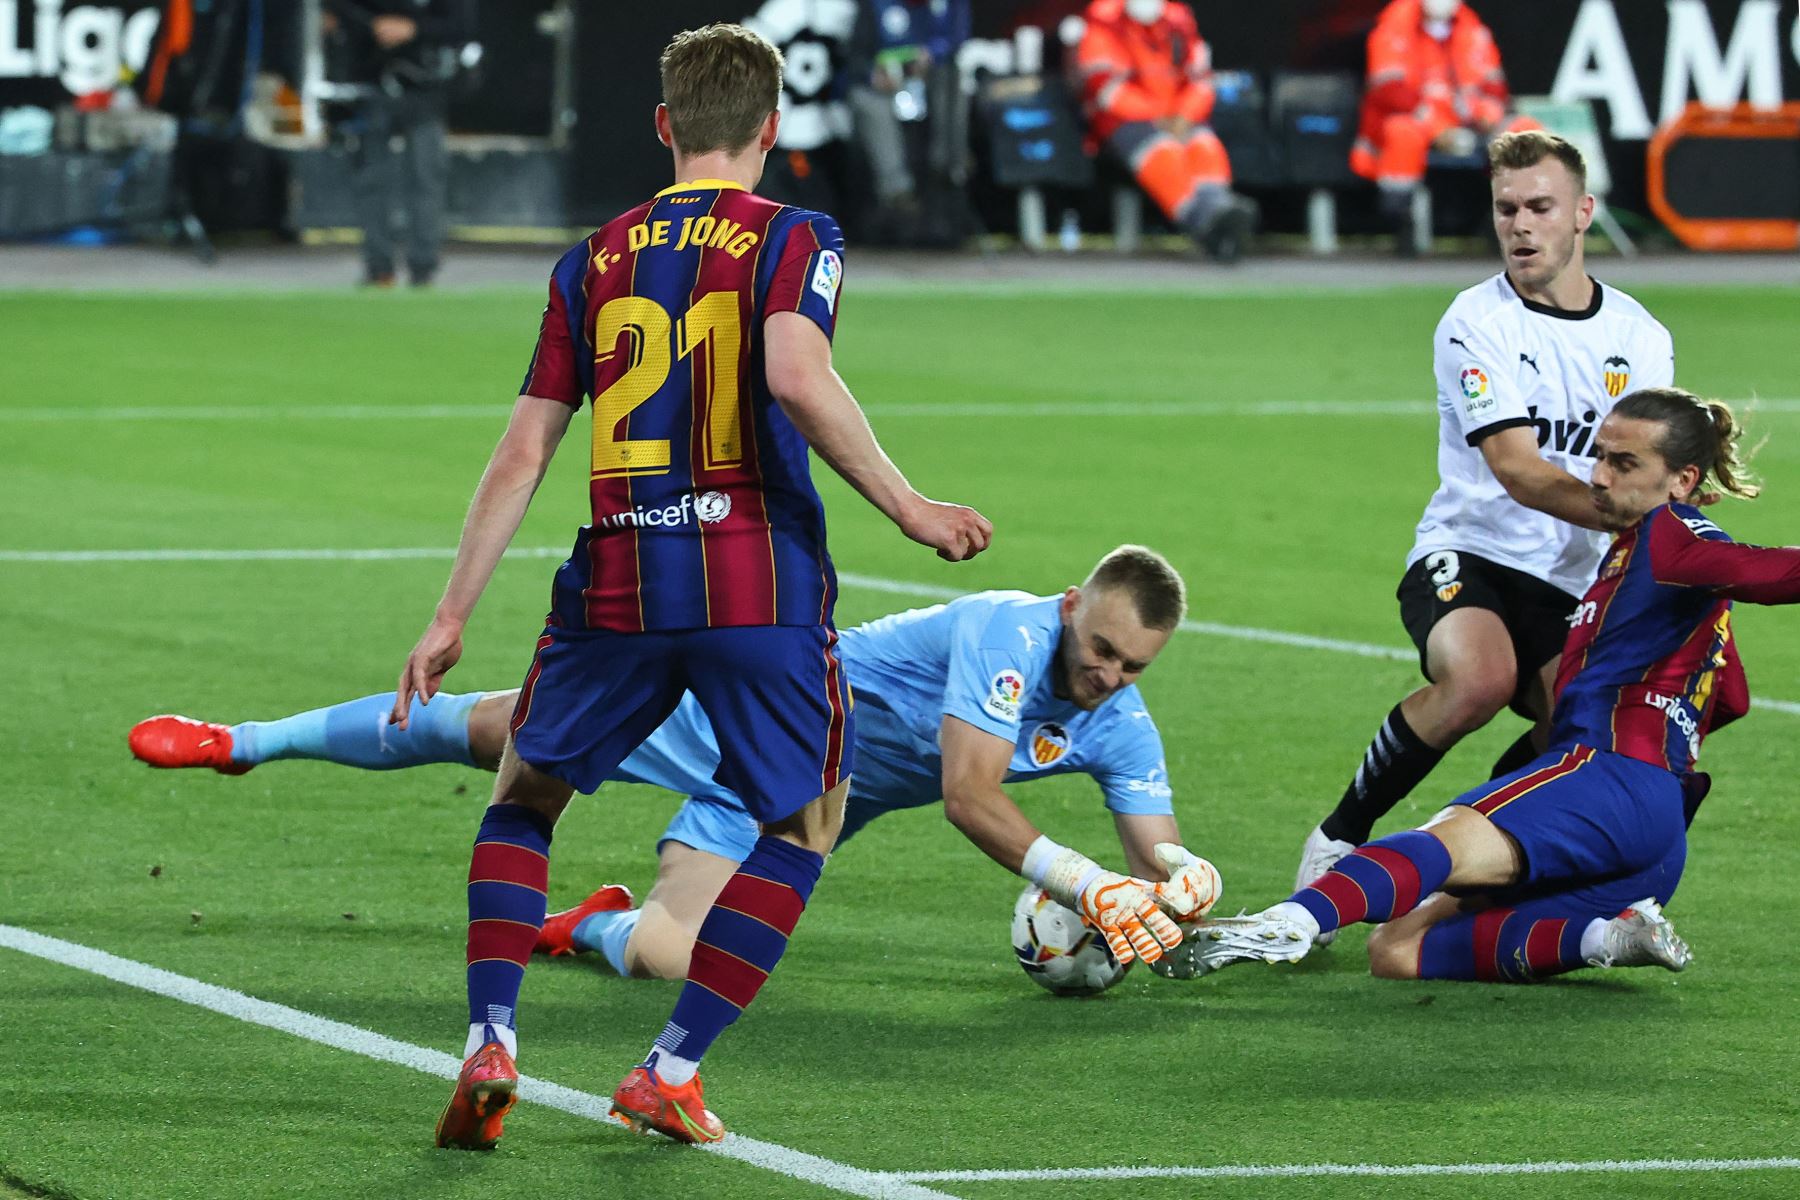 El portero holandés del Valencia, Jasper Cillessen, bloquea un disparo del centrocampista francés del Barcelona Antoine Griezmann, durante el partido de fútbol de la Liga española entre el Valencia y el Barcelona.
Foto: AFP